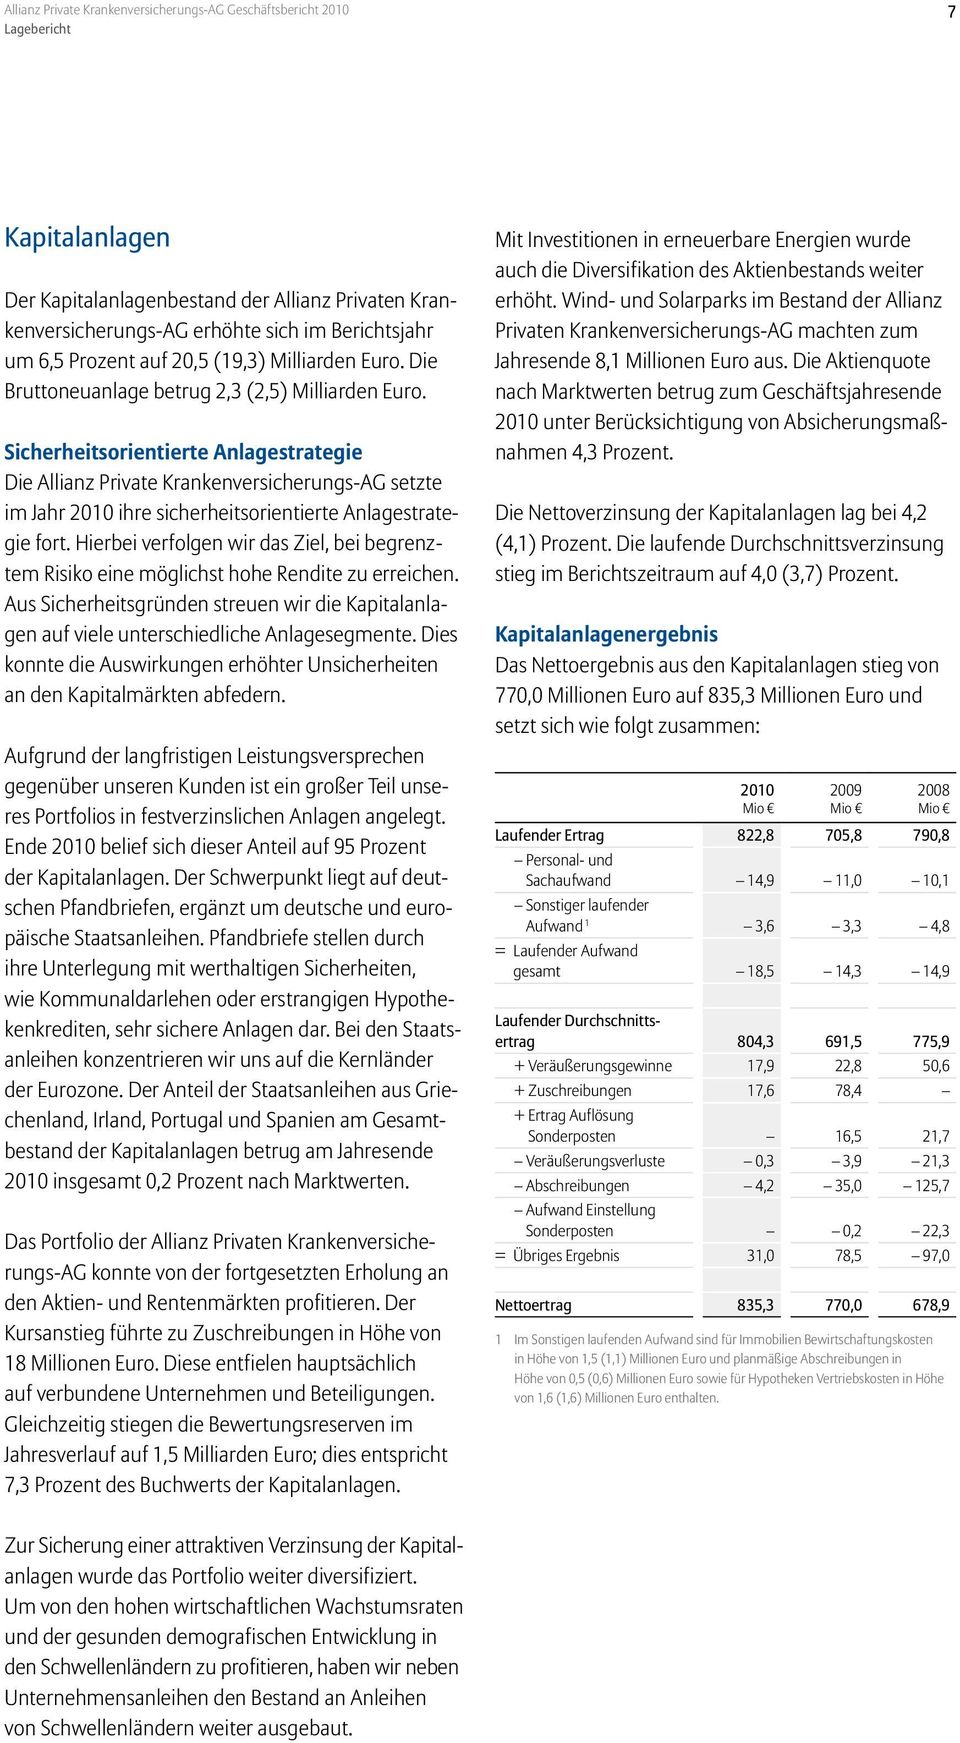 Sicherheitsorientierte Anlagestrategie Die Allianz Private Krankenversicherungs-AG setzte im Jahr 2010 ihre sicherheitsorientierte Anlagestrategie fort.